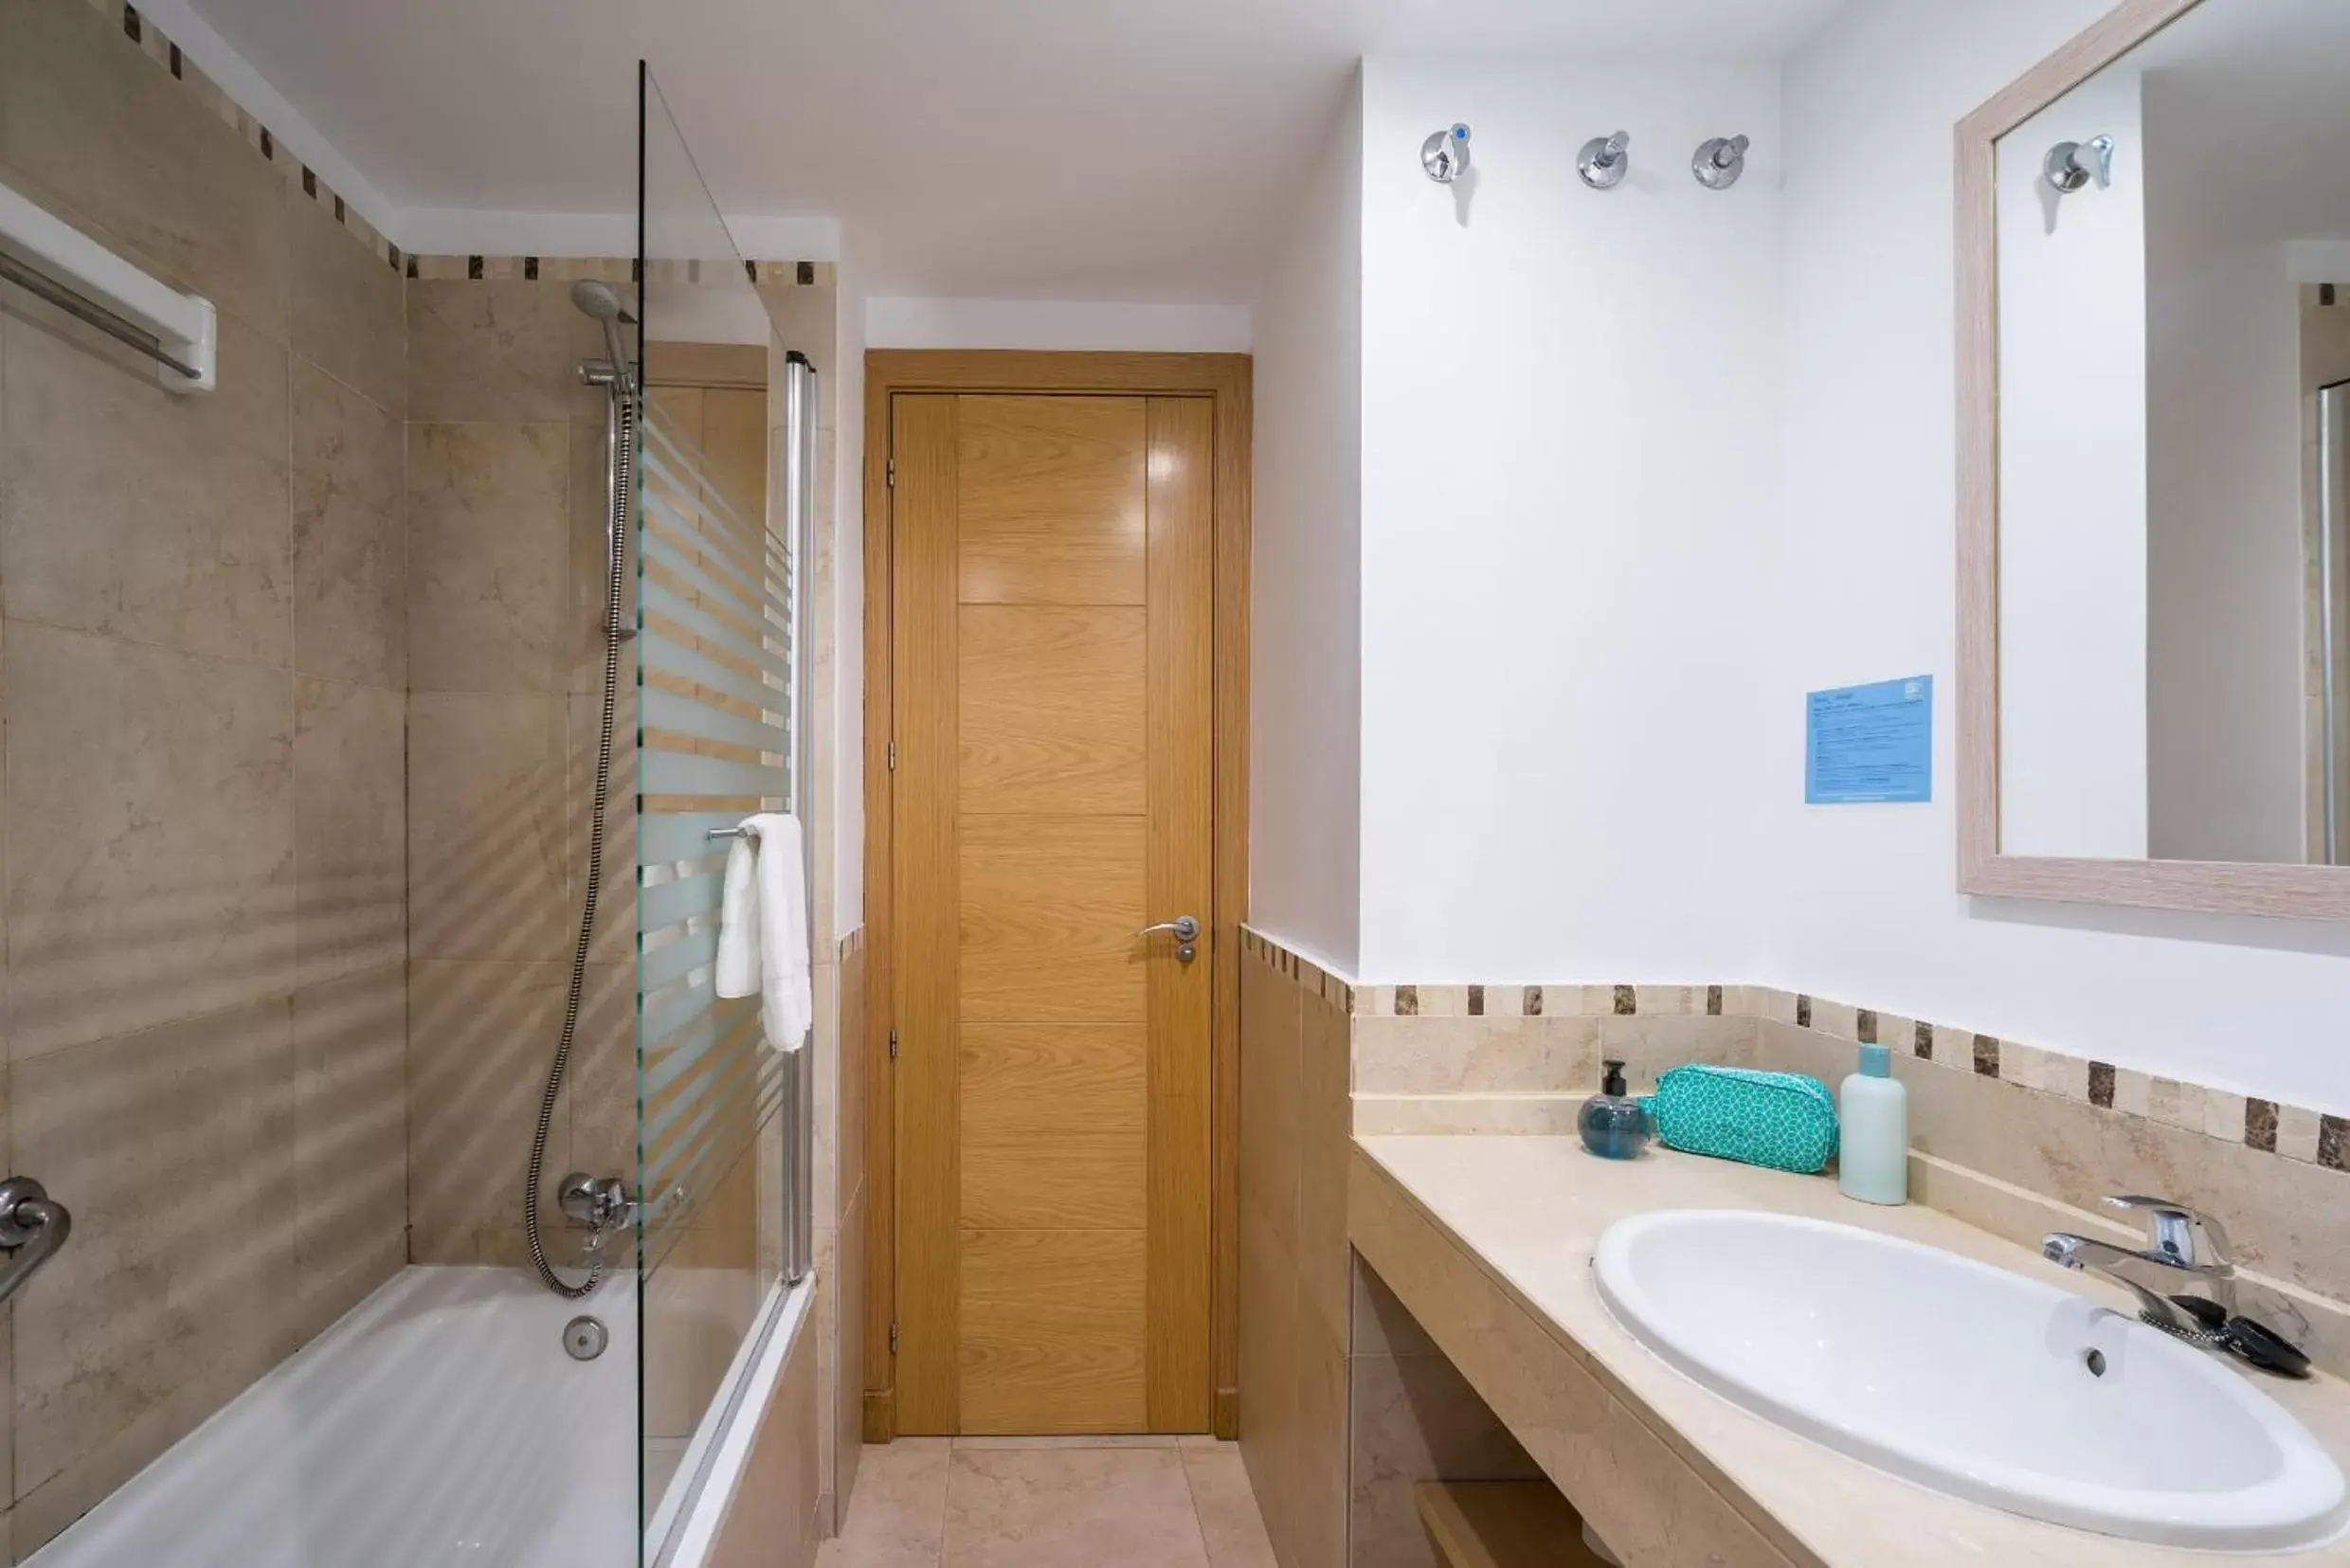 Bathroom in Pierre & Vacances Resort Terrazas Costa del Sol